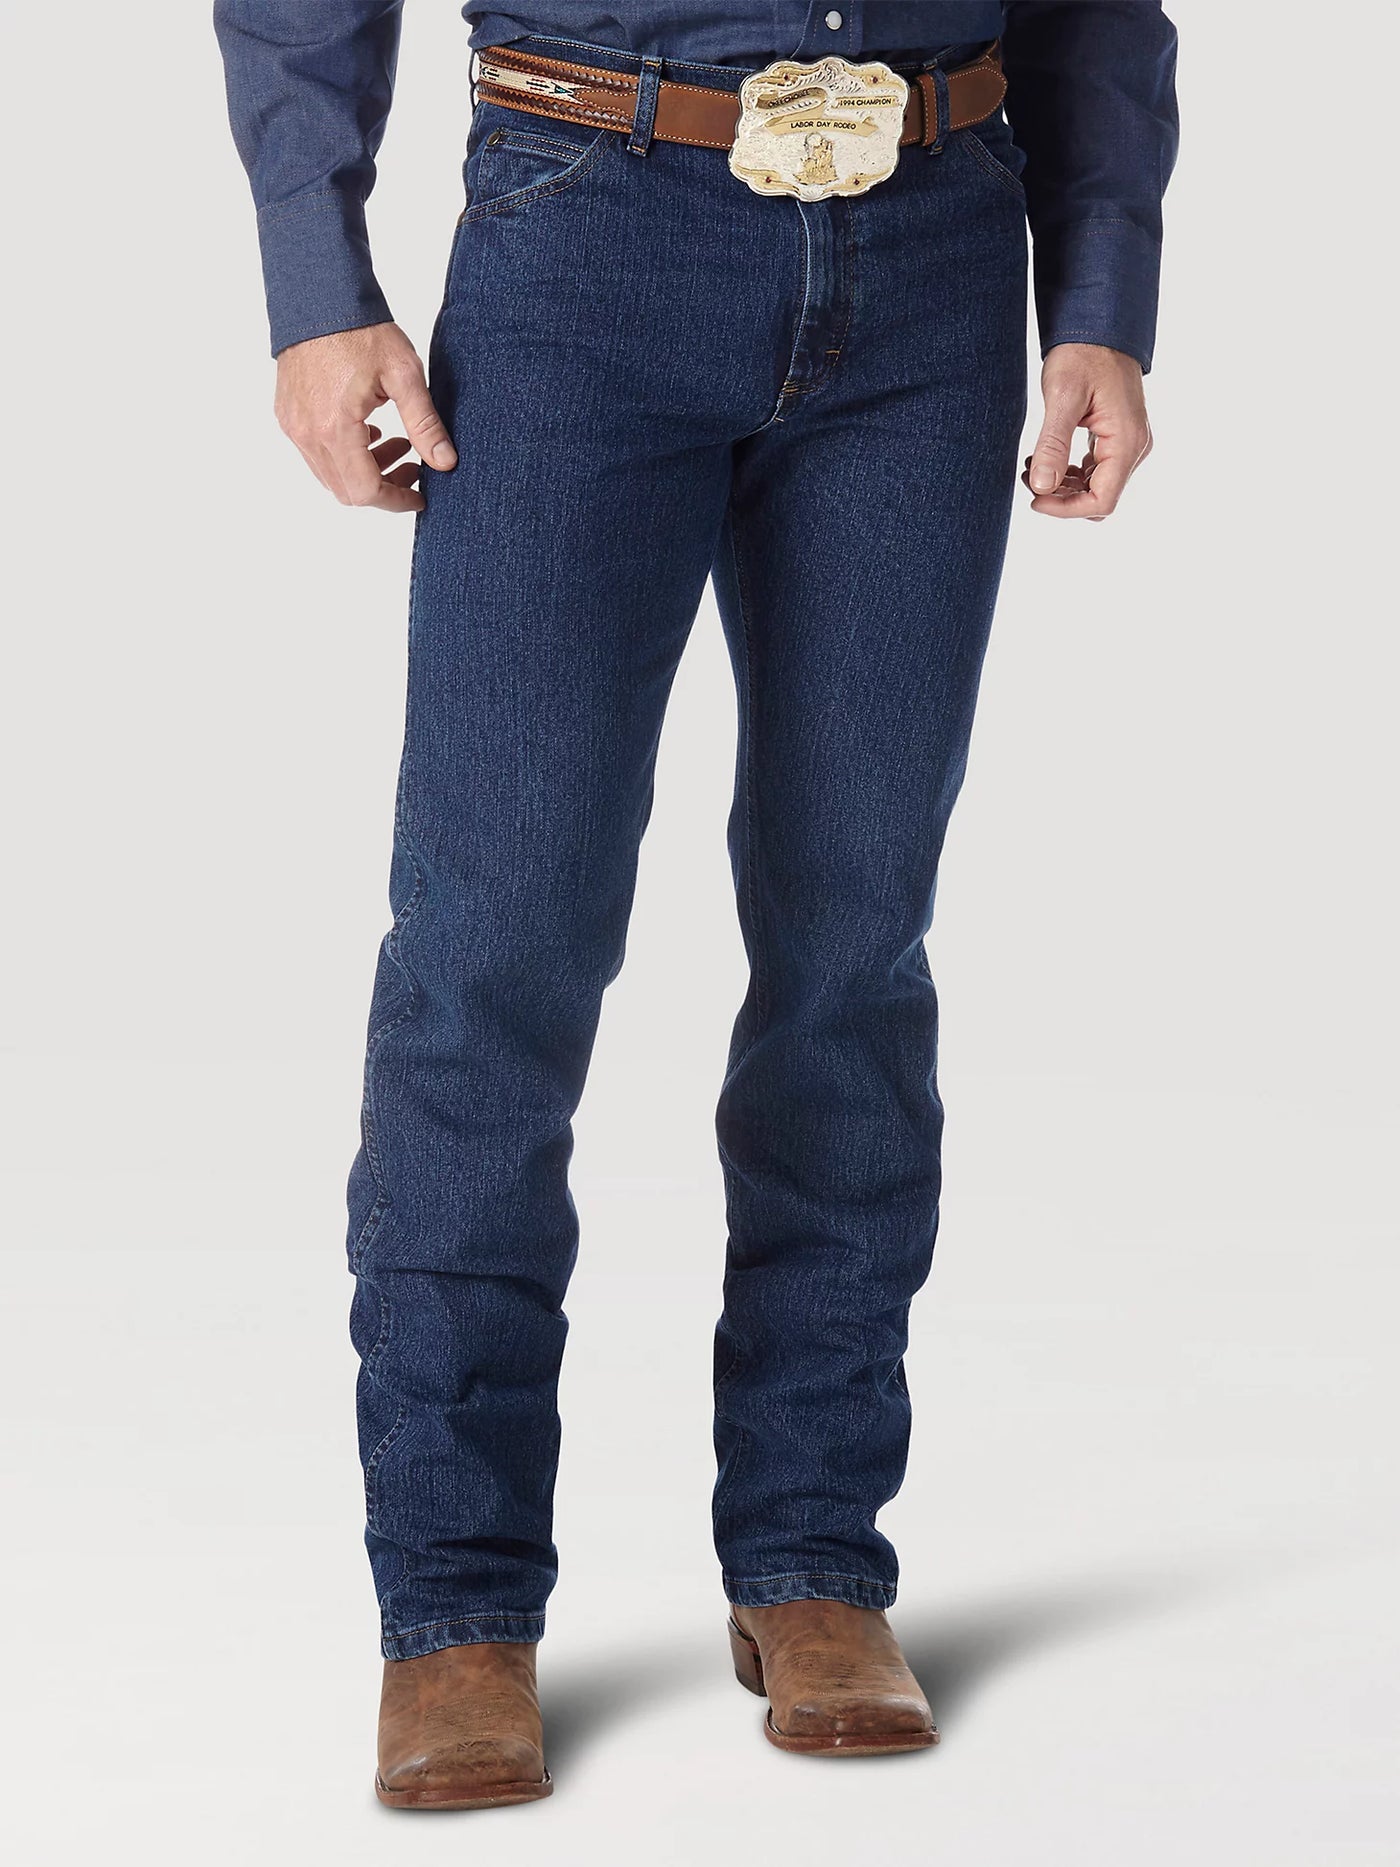 Wrangler Men's Advanced Comfort Cowboy Cut Regular Fit Jeans